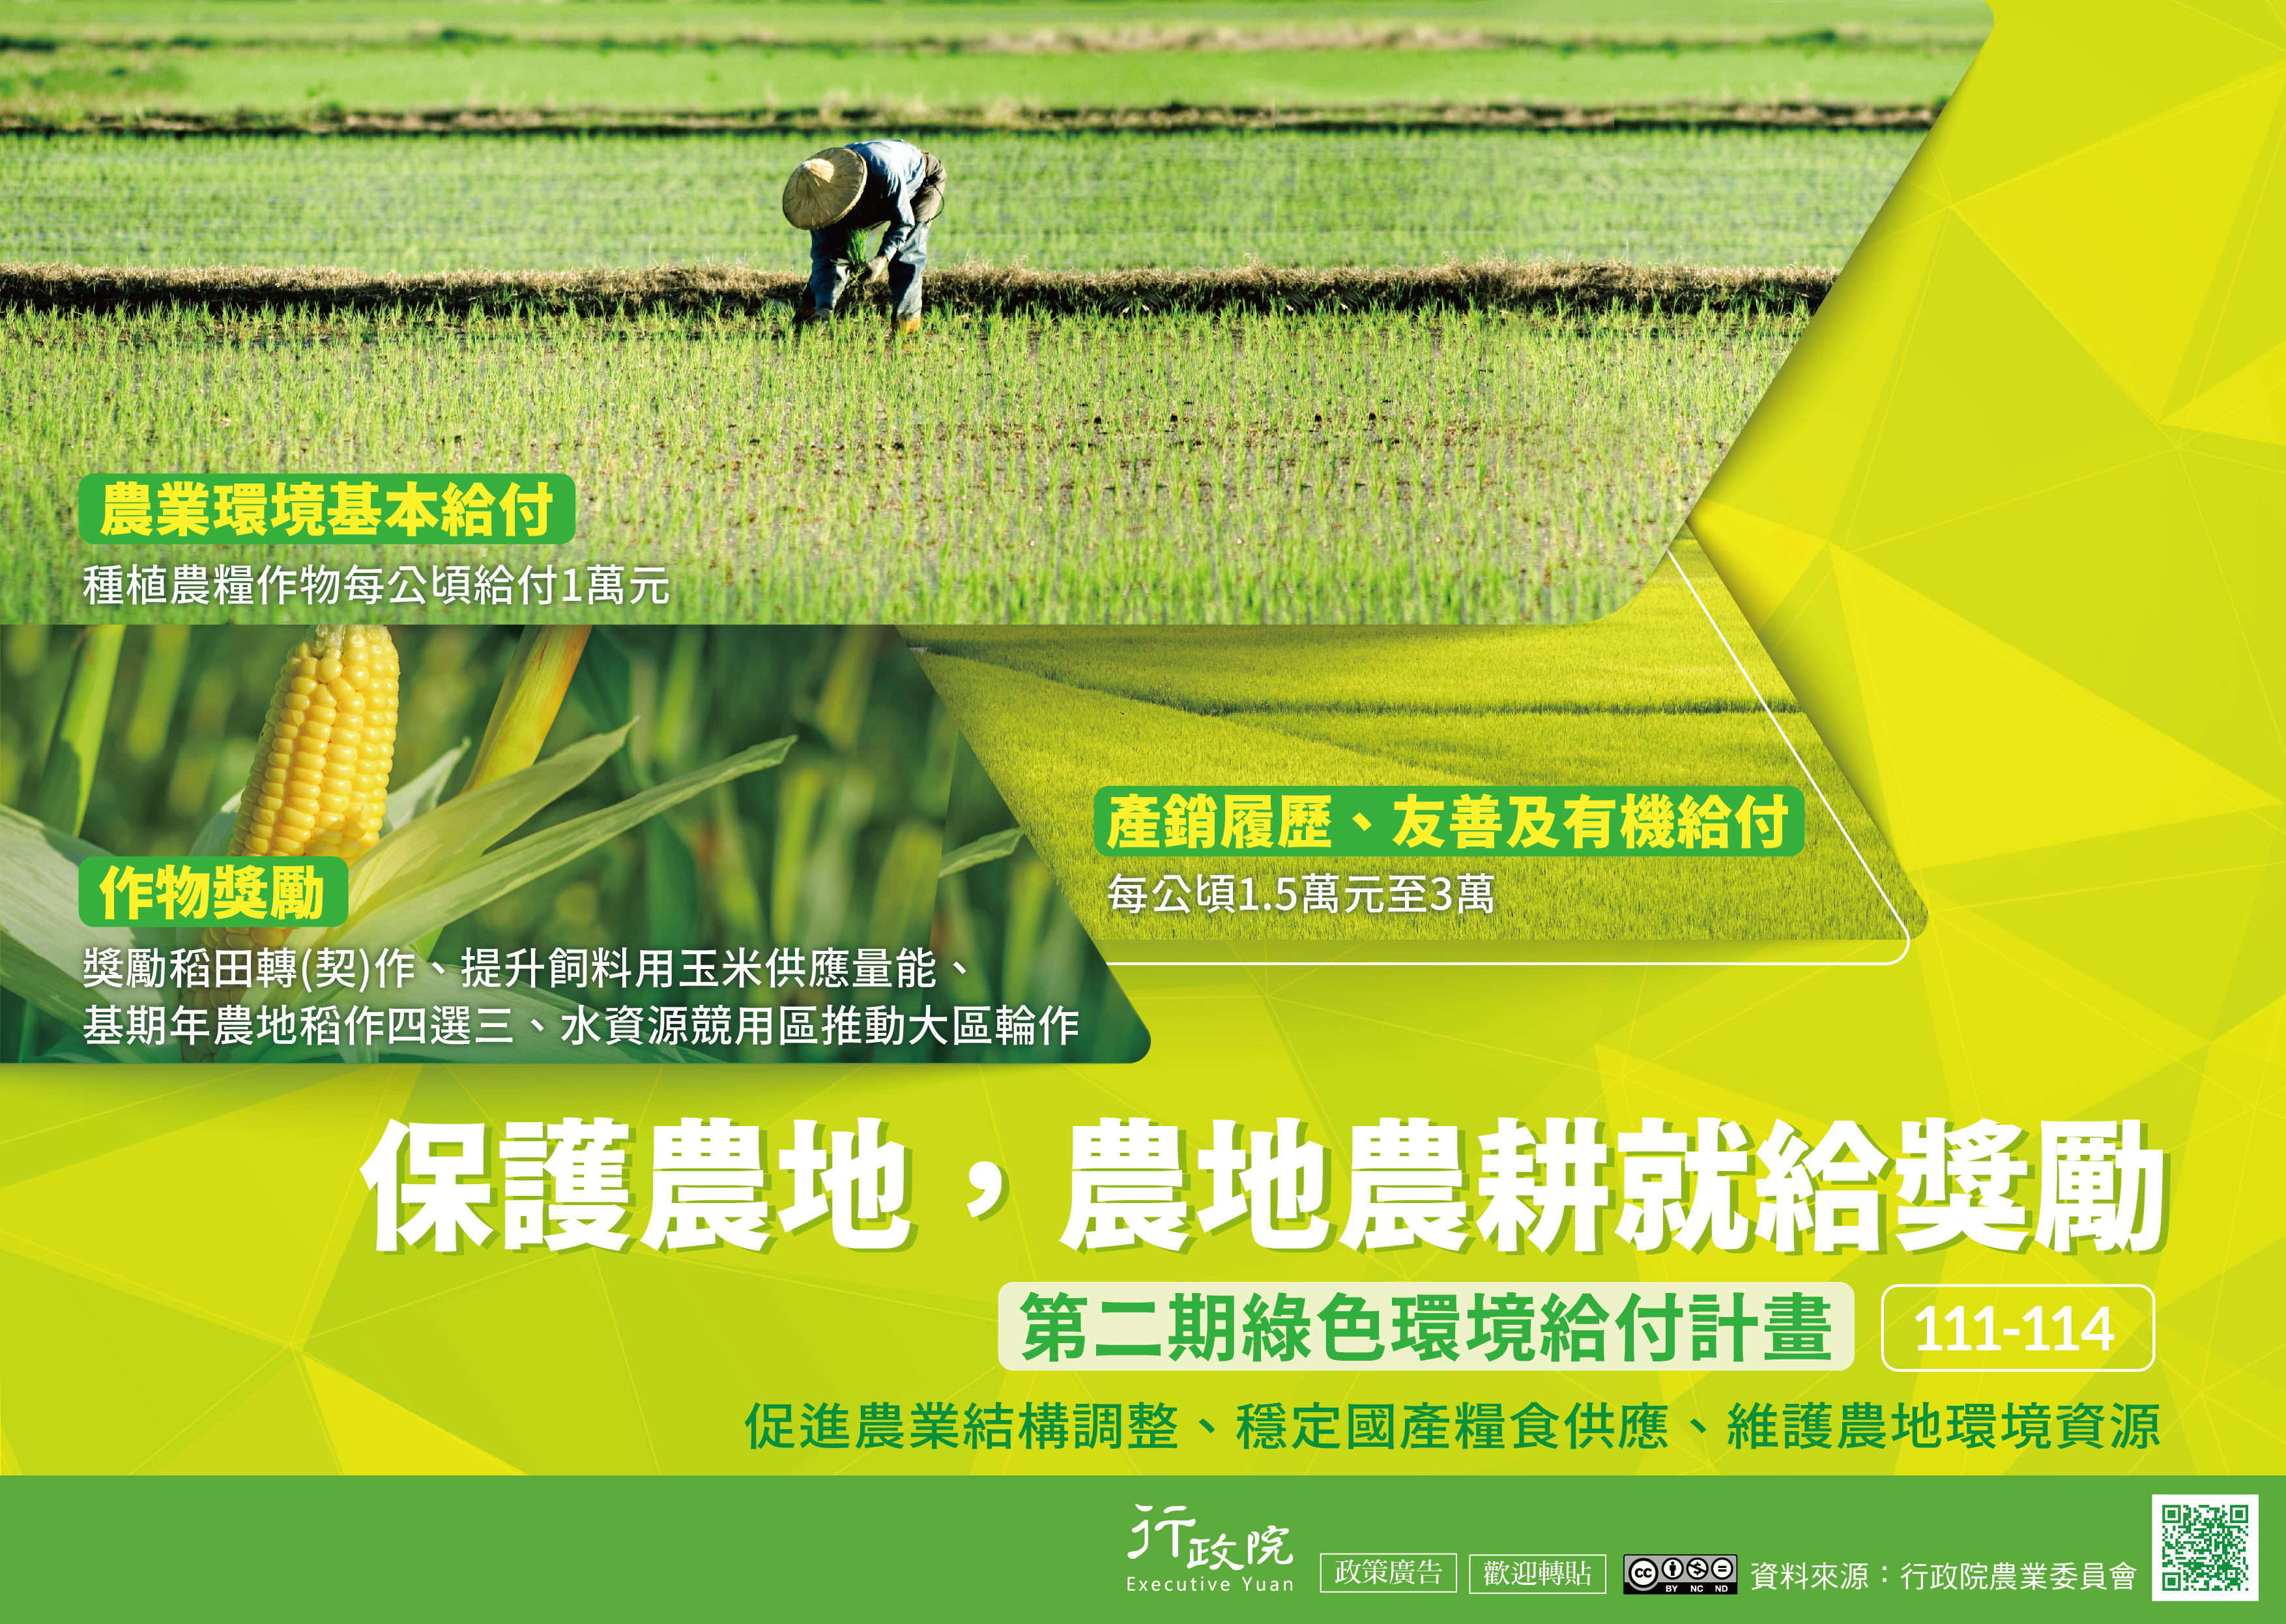 為促進臺灣農業轉型升級，政府自107-110年推動為期四年
「對地綠色環境給付計畫」，成效良好，今(111)年續推動
第二期計畫，以農業環境基本給付、作物獎勵及友善環境
補貼等措施，達到促進農業結構調整、穩定國產糧食供
應、維護農地環境資源